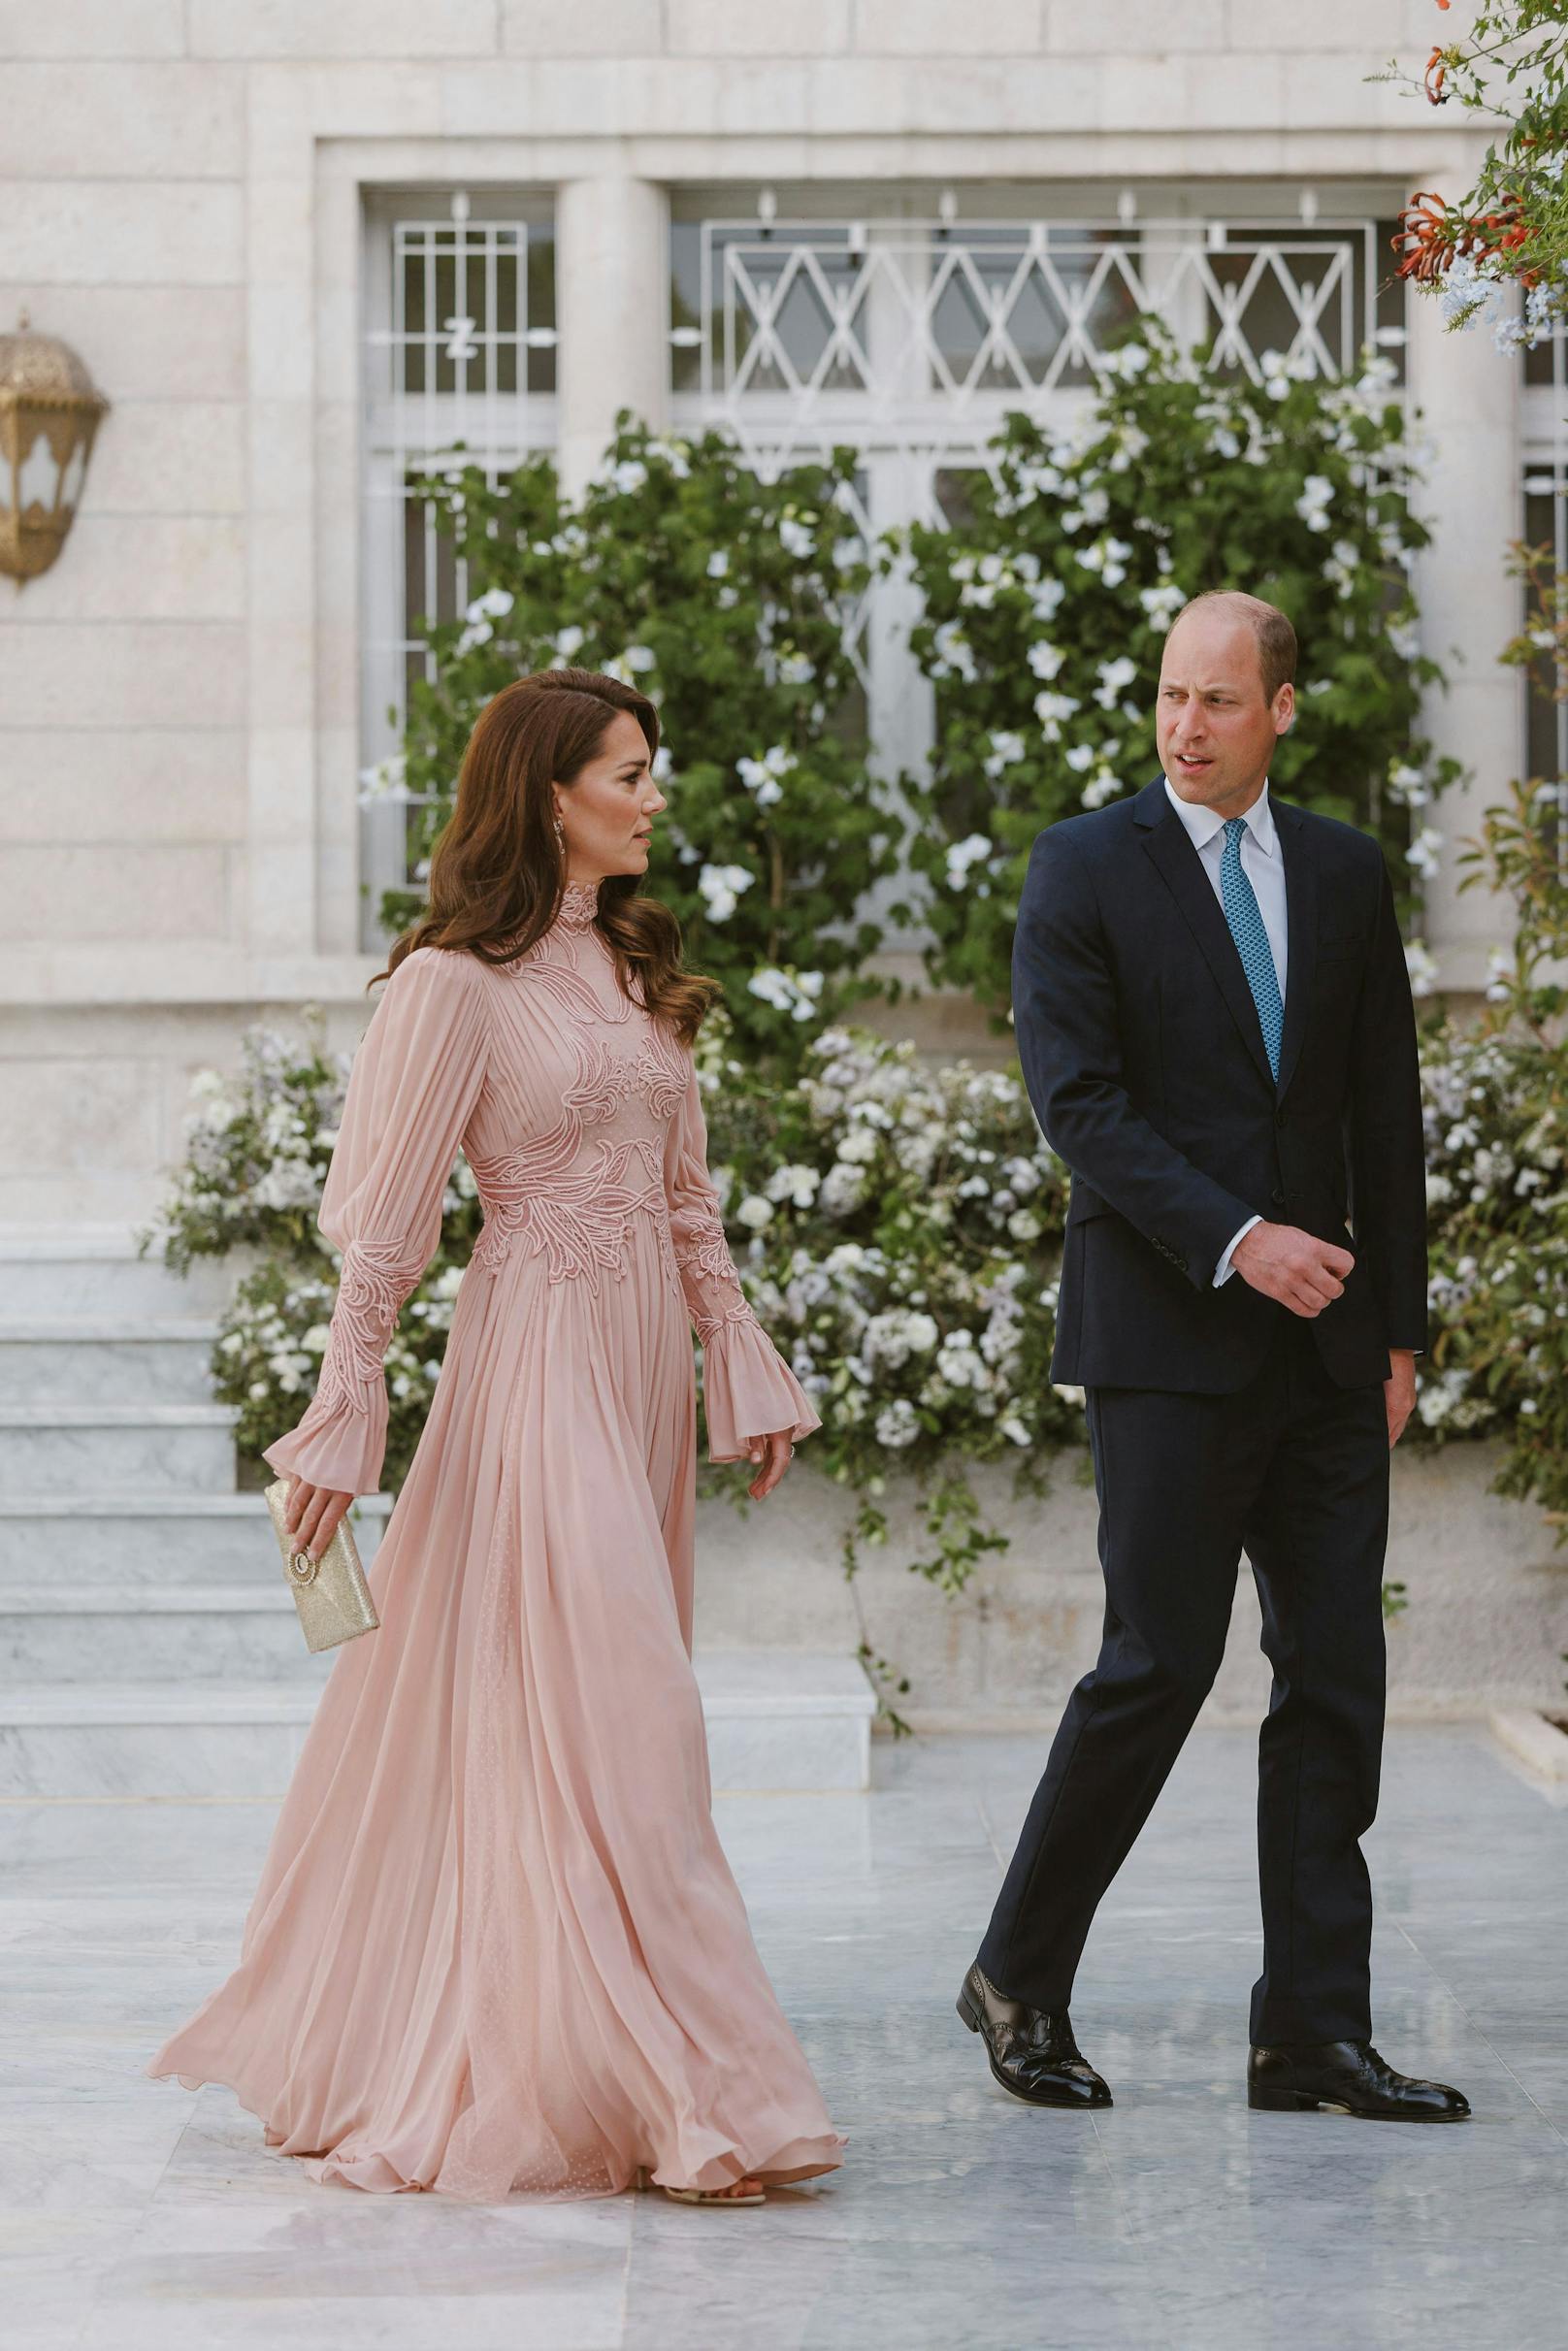 Prinzessin Kate hatte für die royale Hochzeit in Jordanien ein hochgeschlossenes Kleid des libanesischen Designers Elie Saab gewählt.&nbsp;